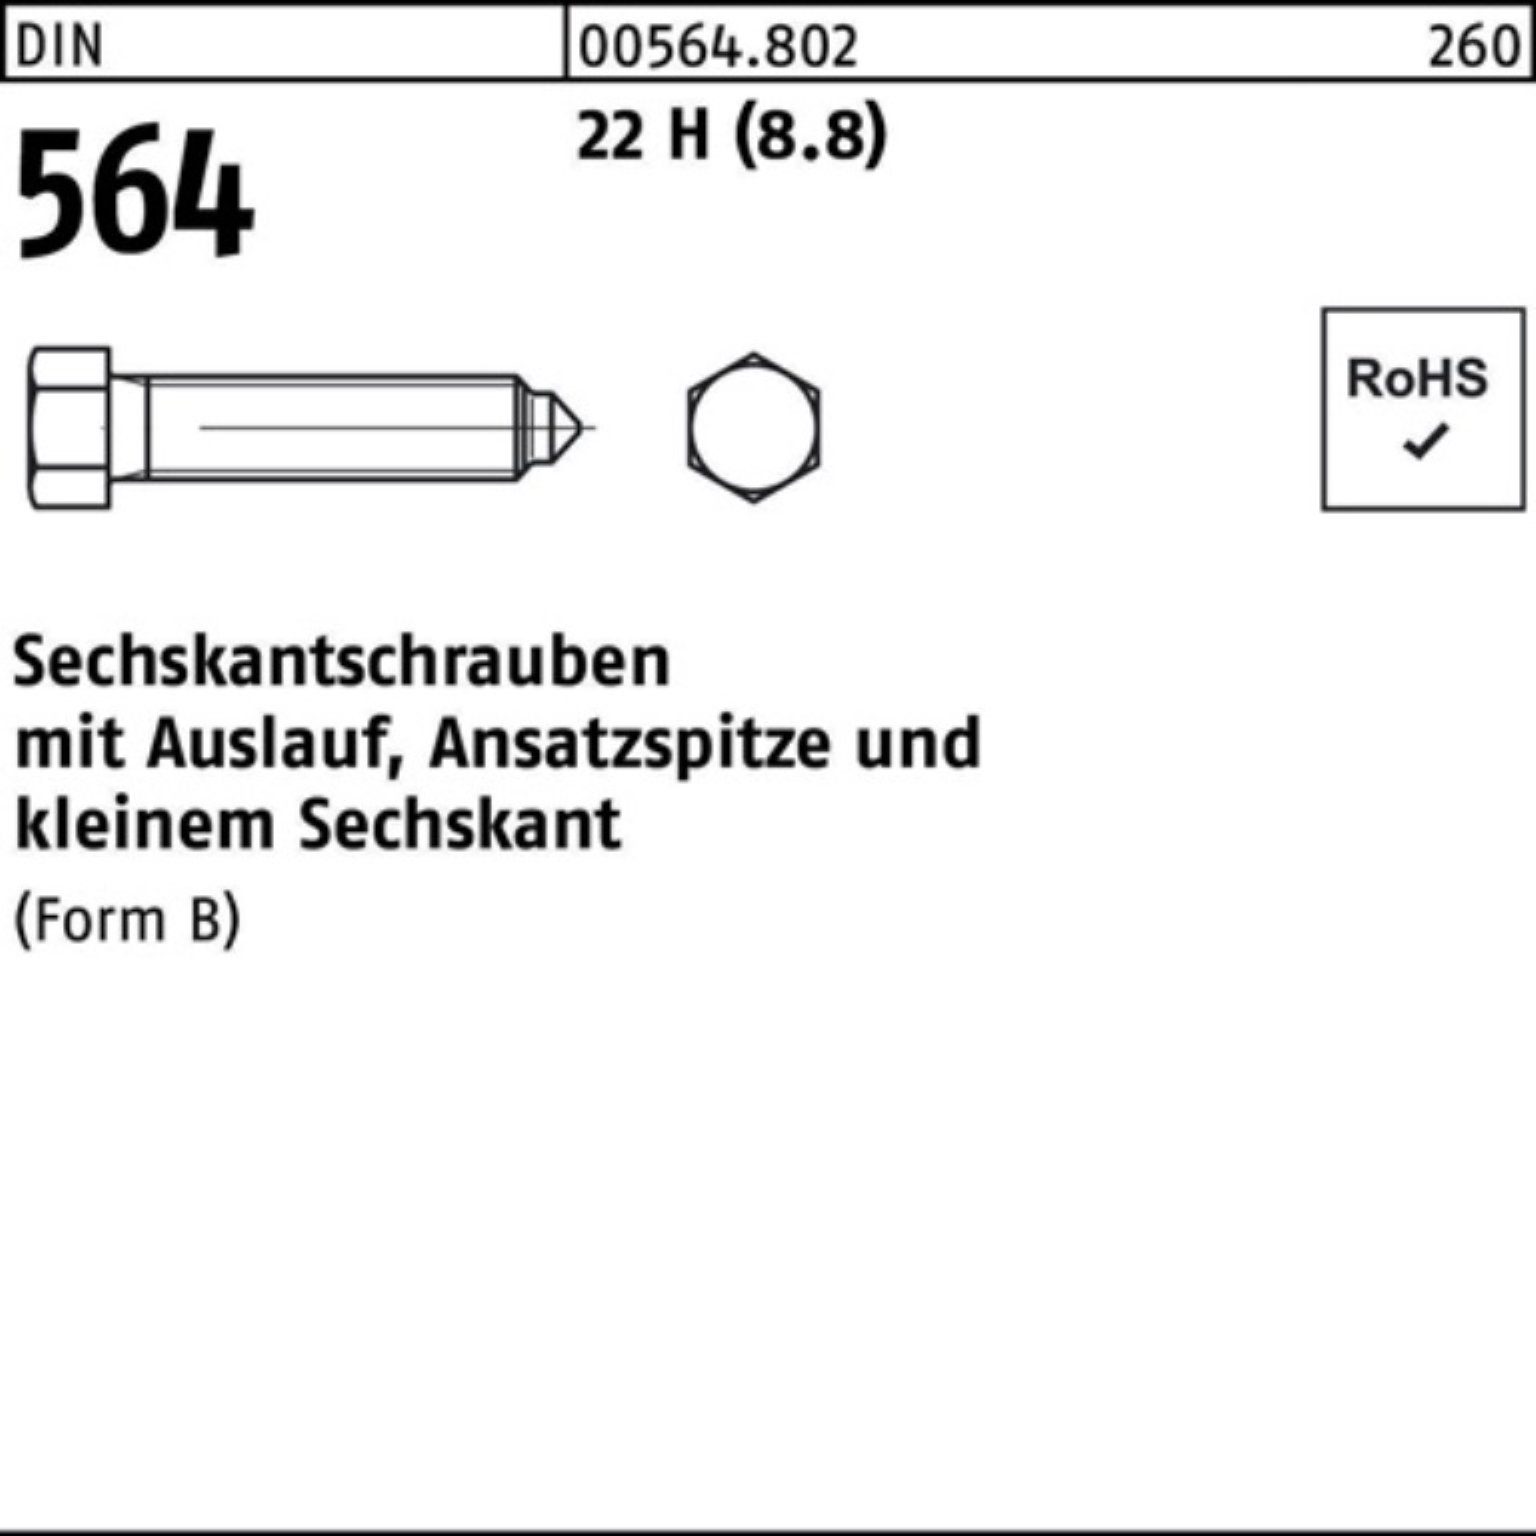 Reyher Sechskantschraube 100er Pack Sechskantschraube DIN 564 Ansatzspitze/Auslauf BM 24x 60 22